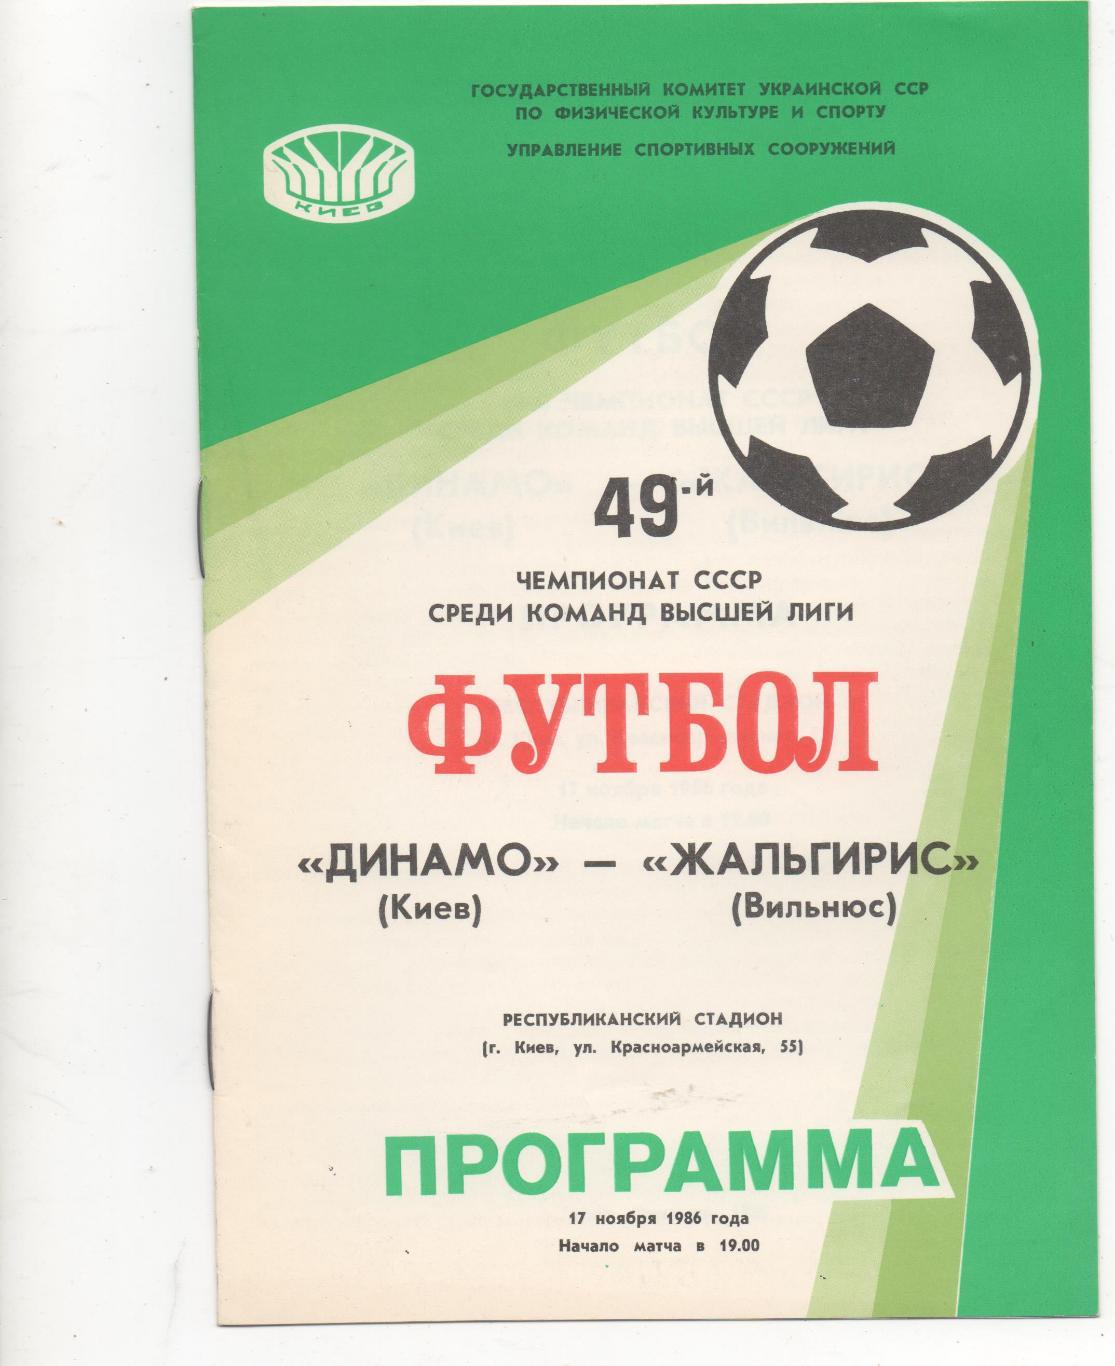 Динамо (Киев) - Жальгирис (Вильнюс) - 1986.